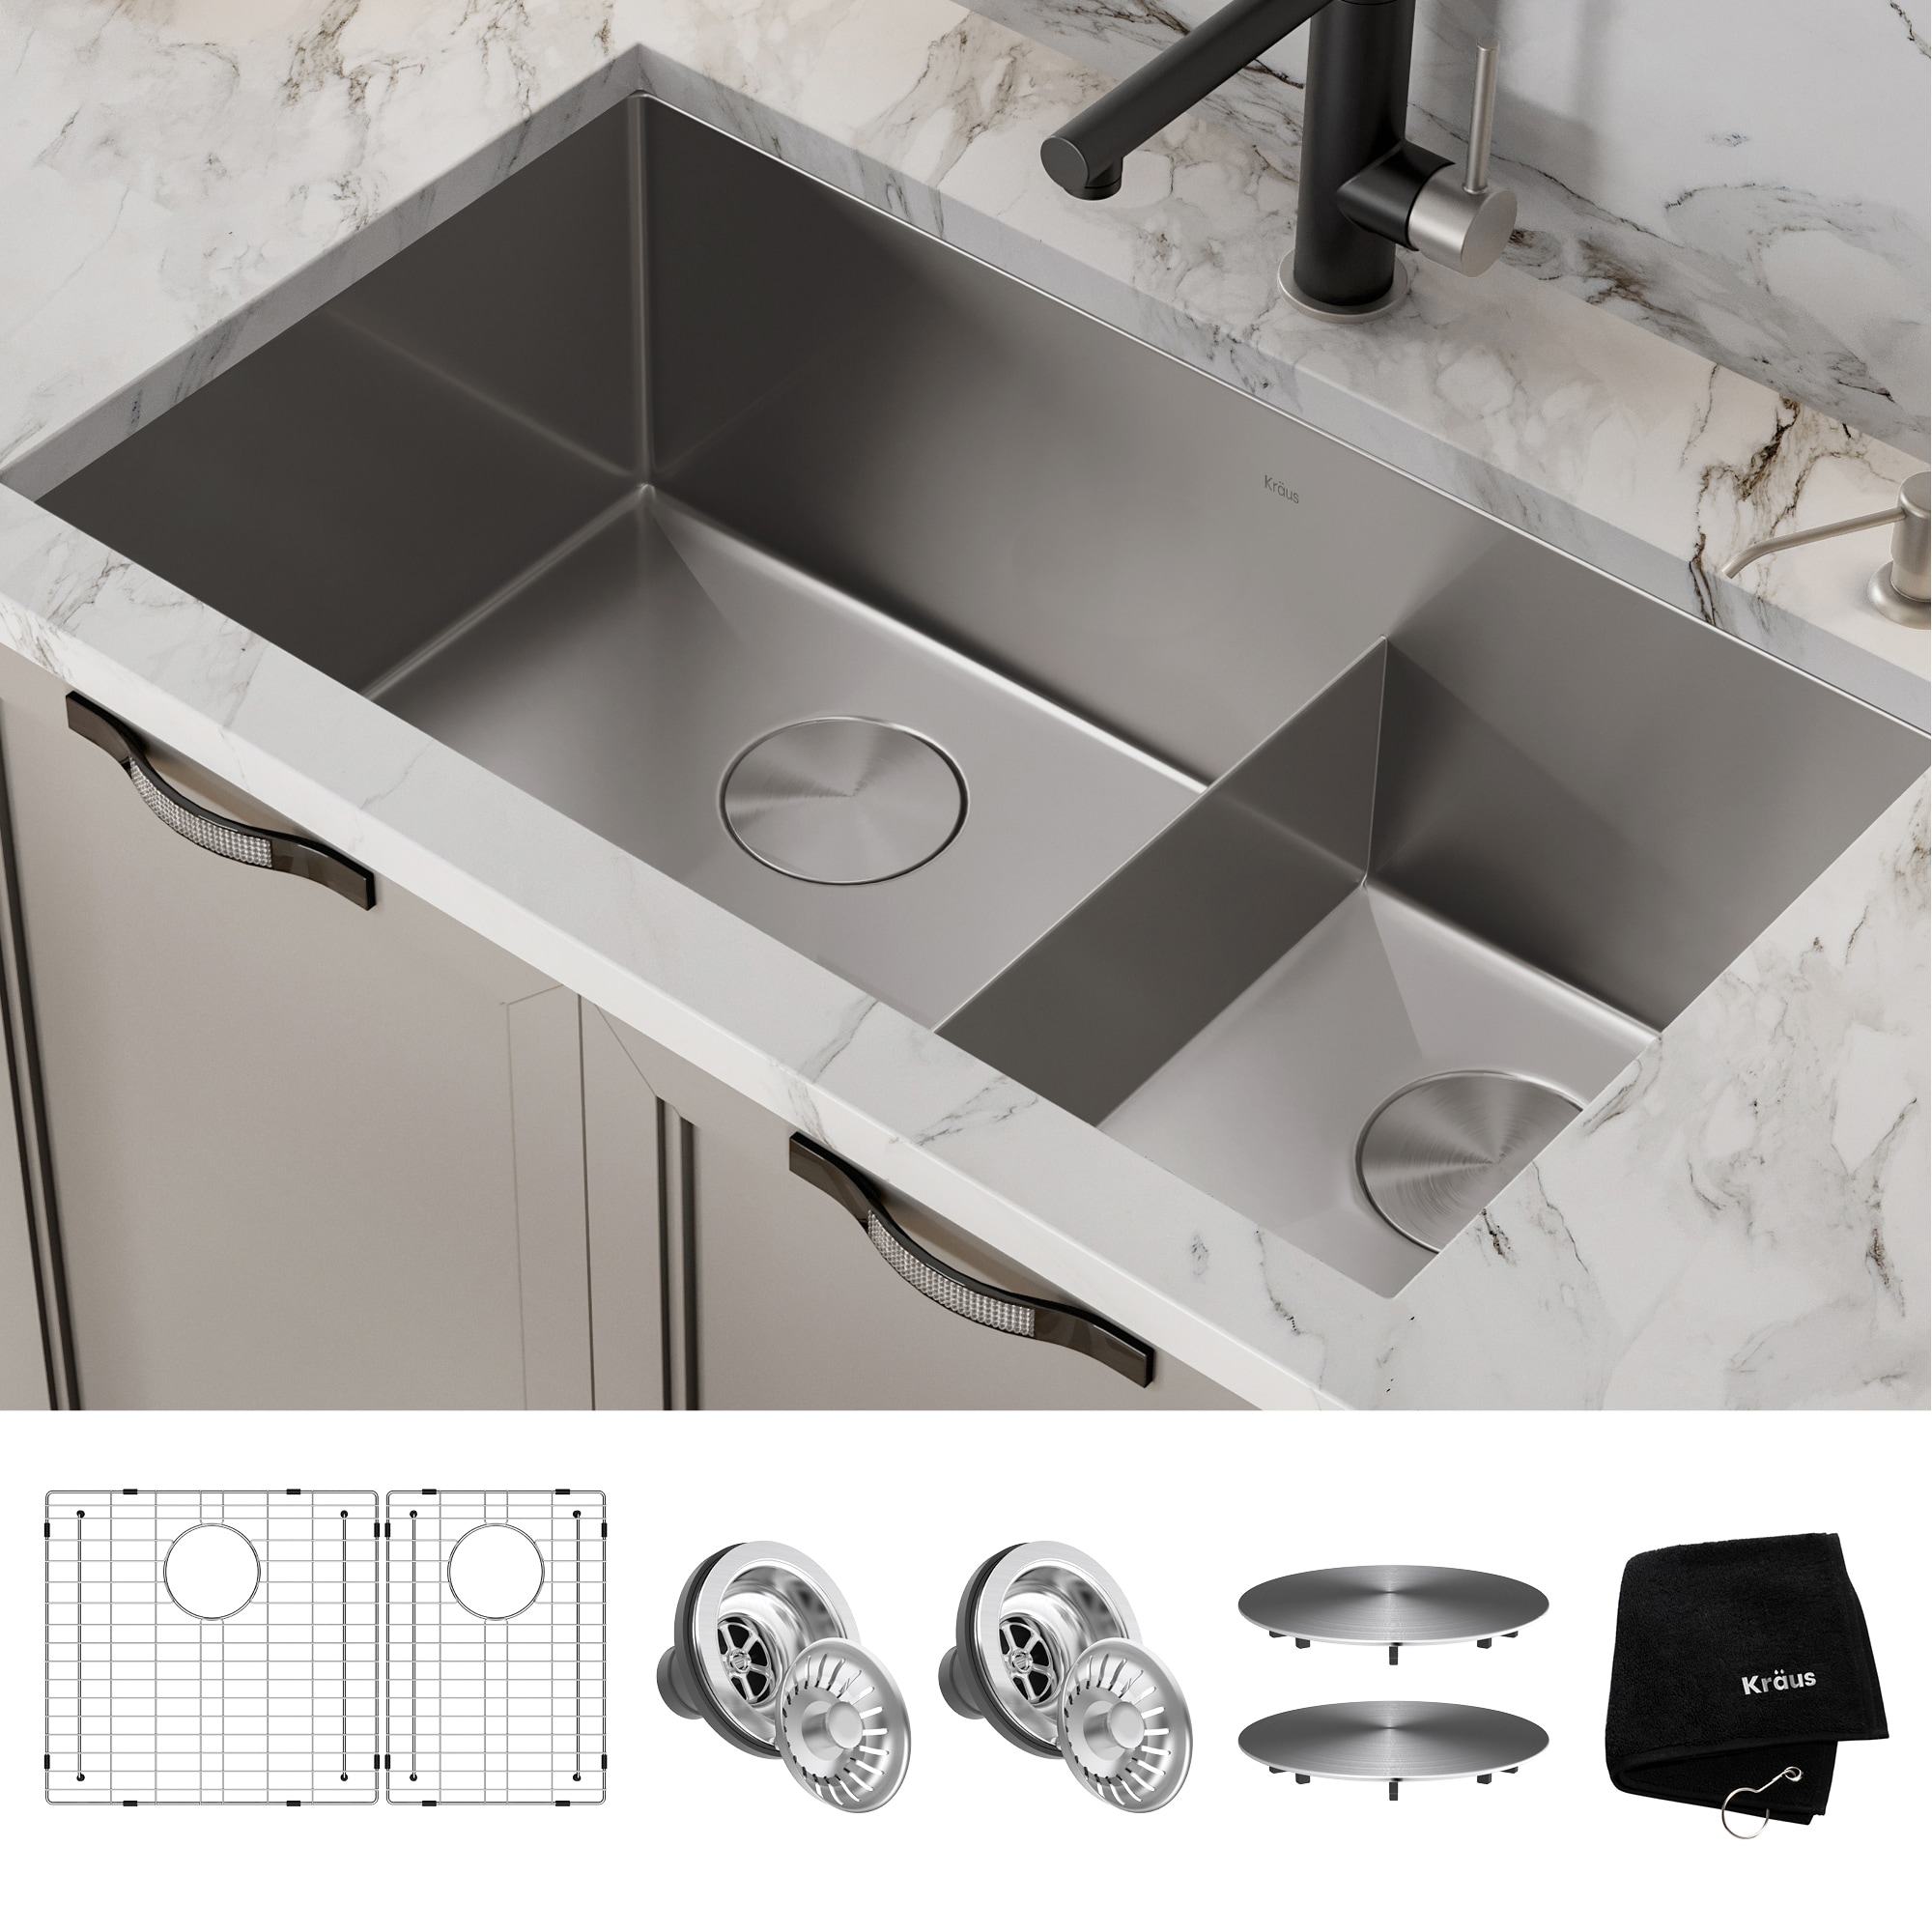 STYLISH 33 inch Slim Low Divider Double Bowl Undermount Kitchen Sink